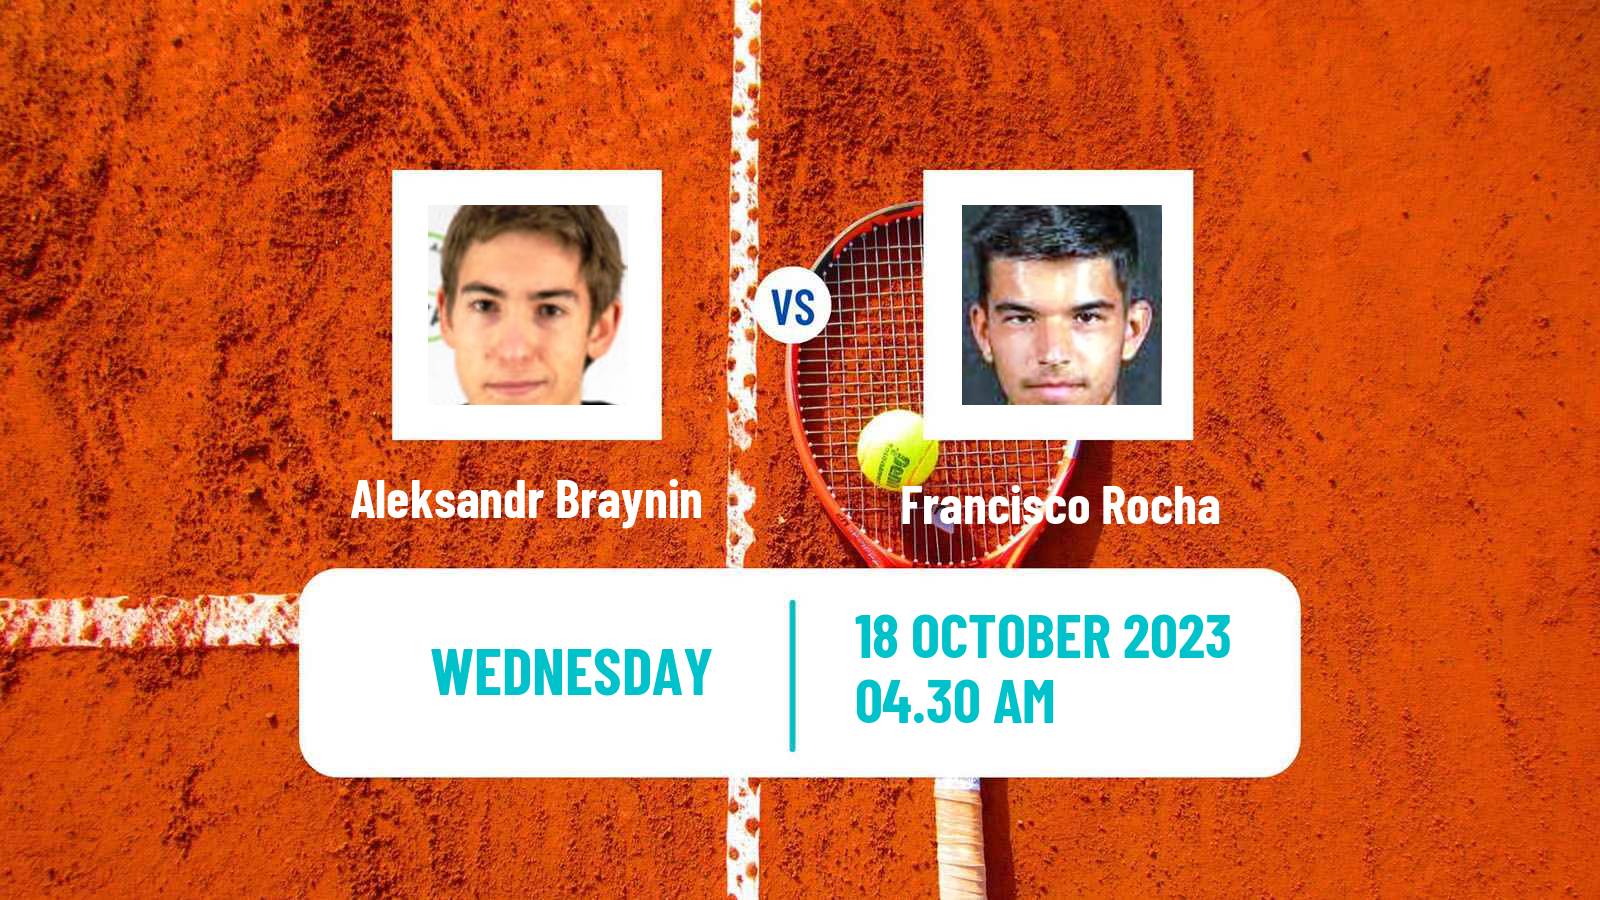 Tennis ITF M25 Tavira 2 Men Aleksandr Braynin - Francisco Rocha